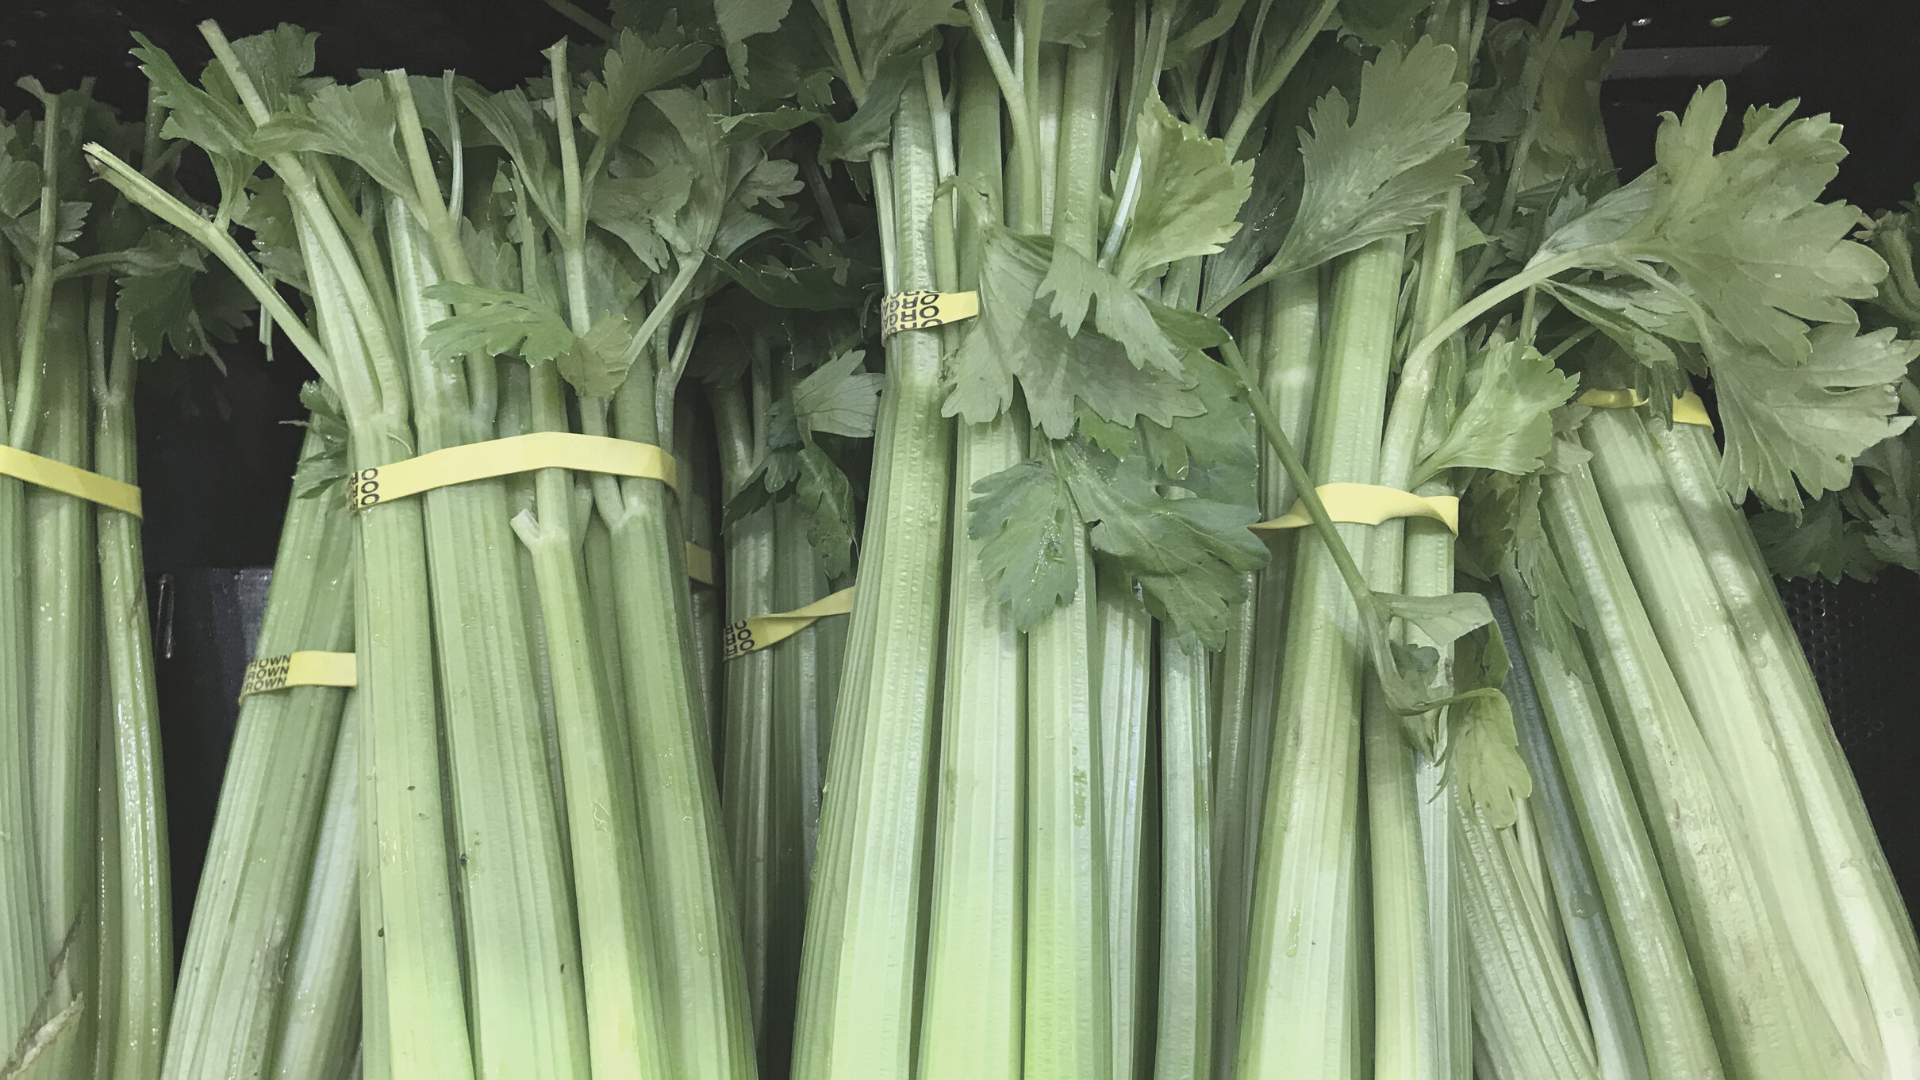 Fermented Celery